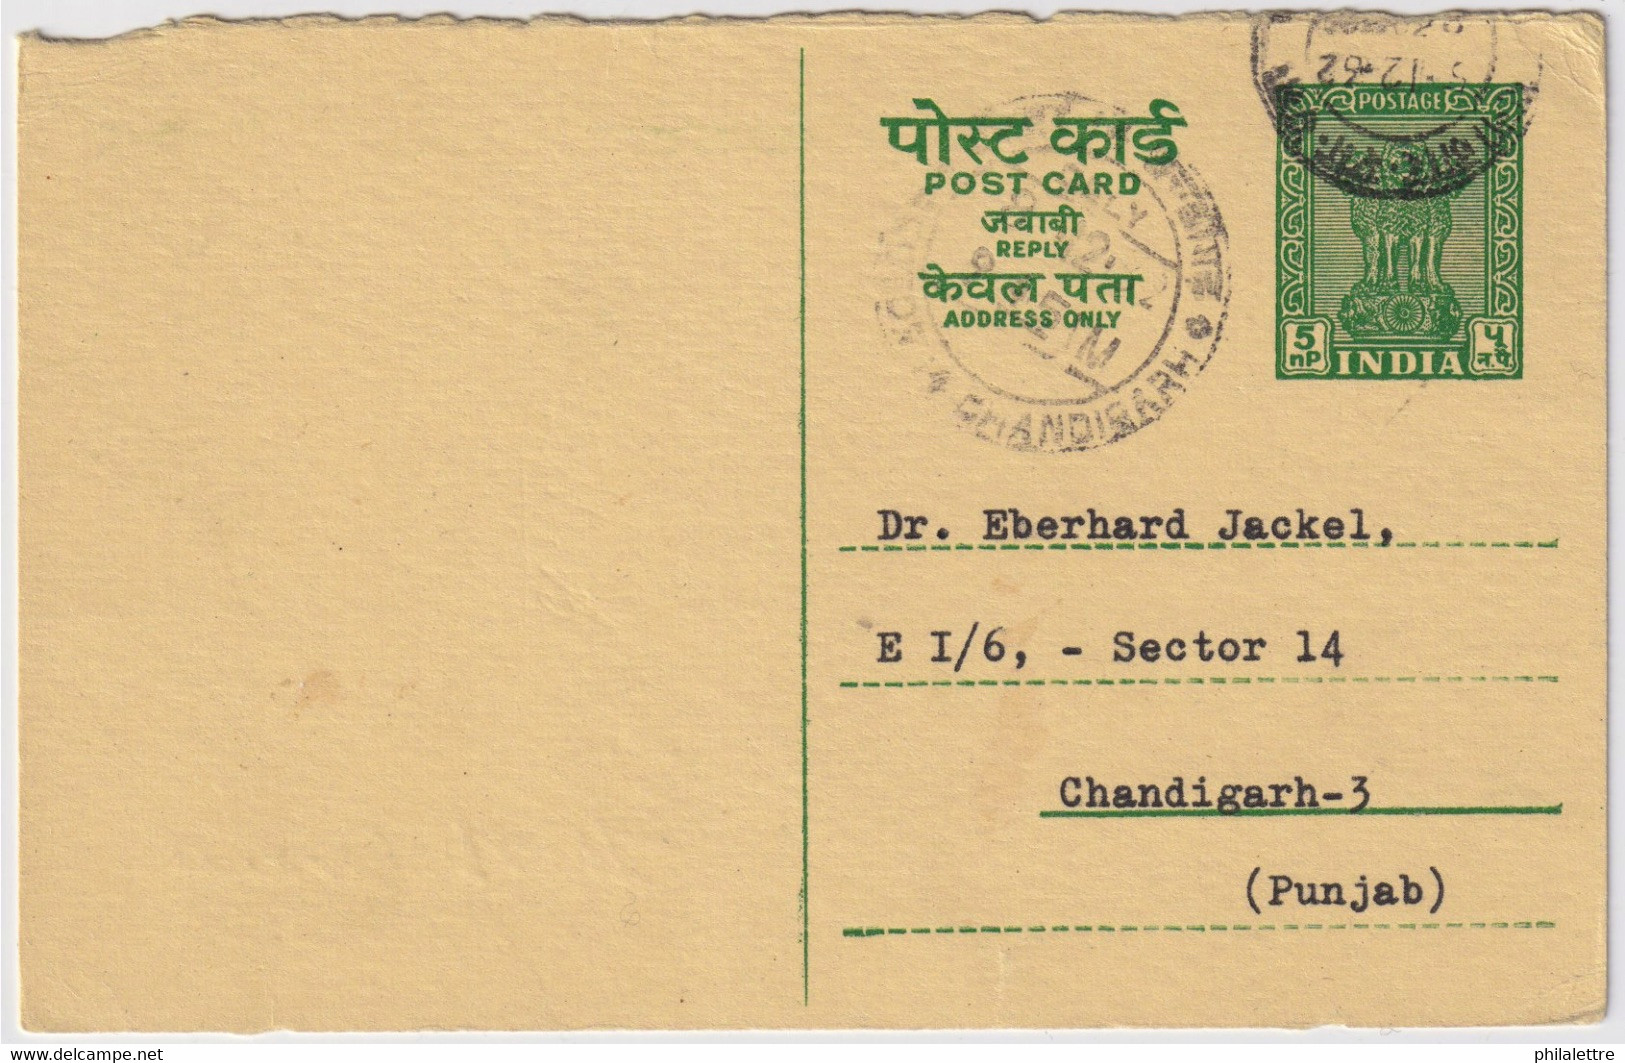 INDE / INDIA - 1962 - Fine Postal Card Used Locally In CHANDIGARH - Ansichtskarten